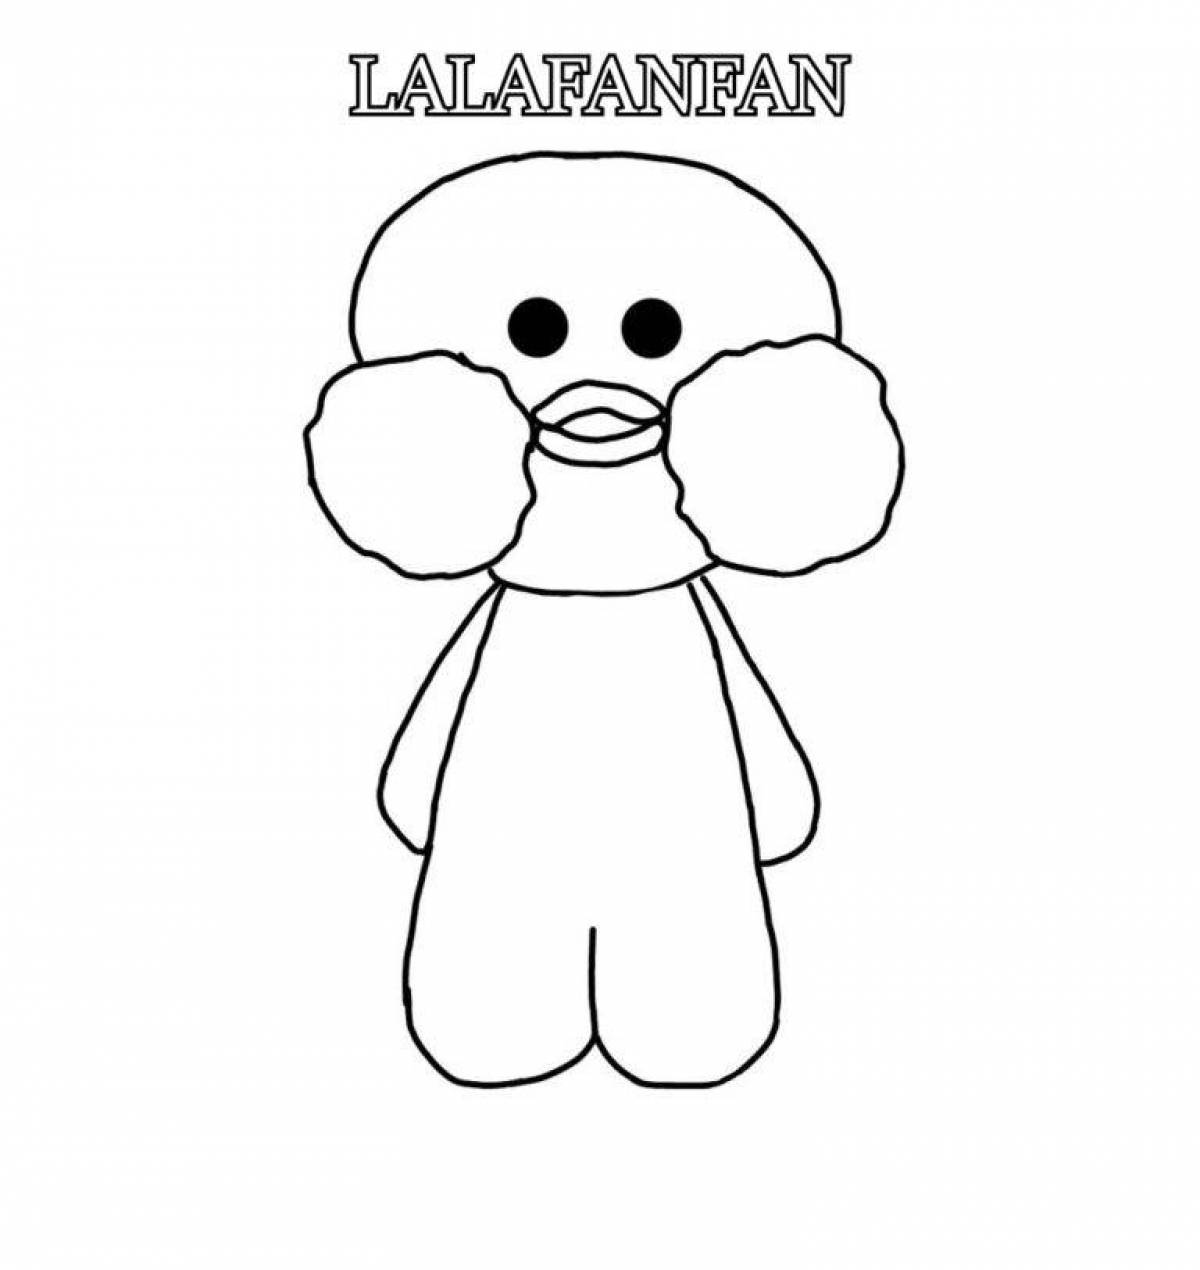 Duck lalafanfan #1